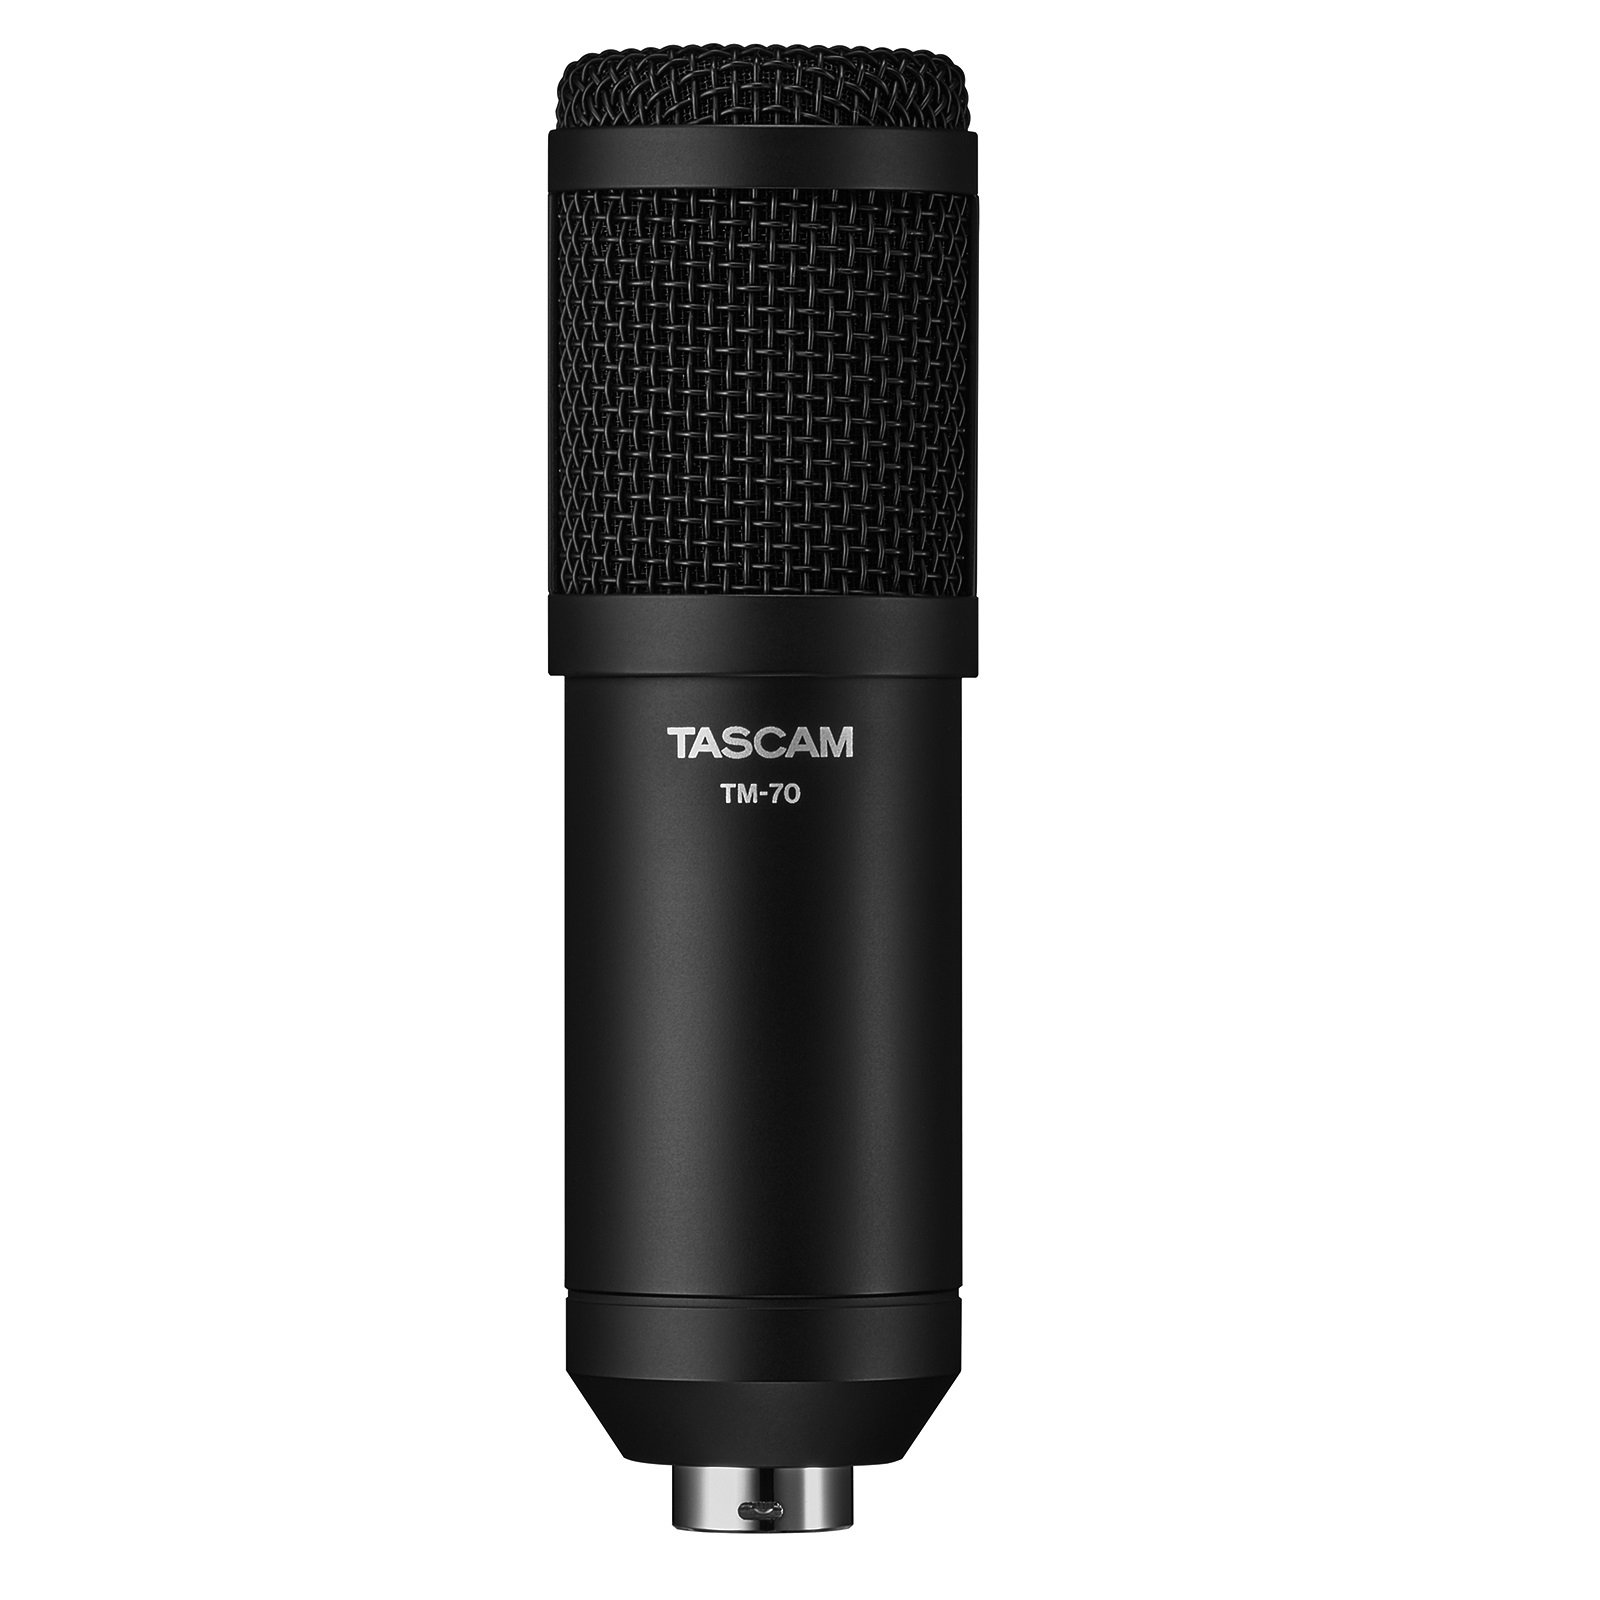 TASCAM TM-70 - супер-кардиоидный динамический микрофон для записи голоса, стримов и подкастов